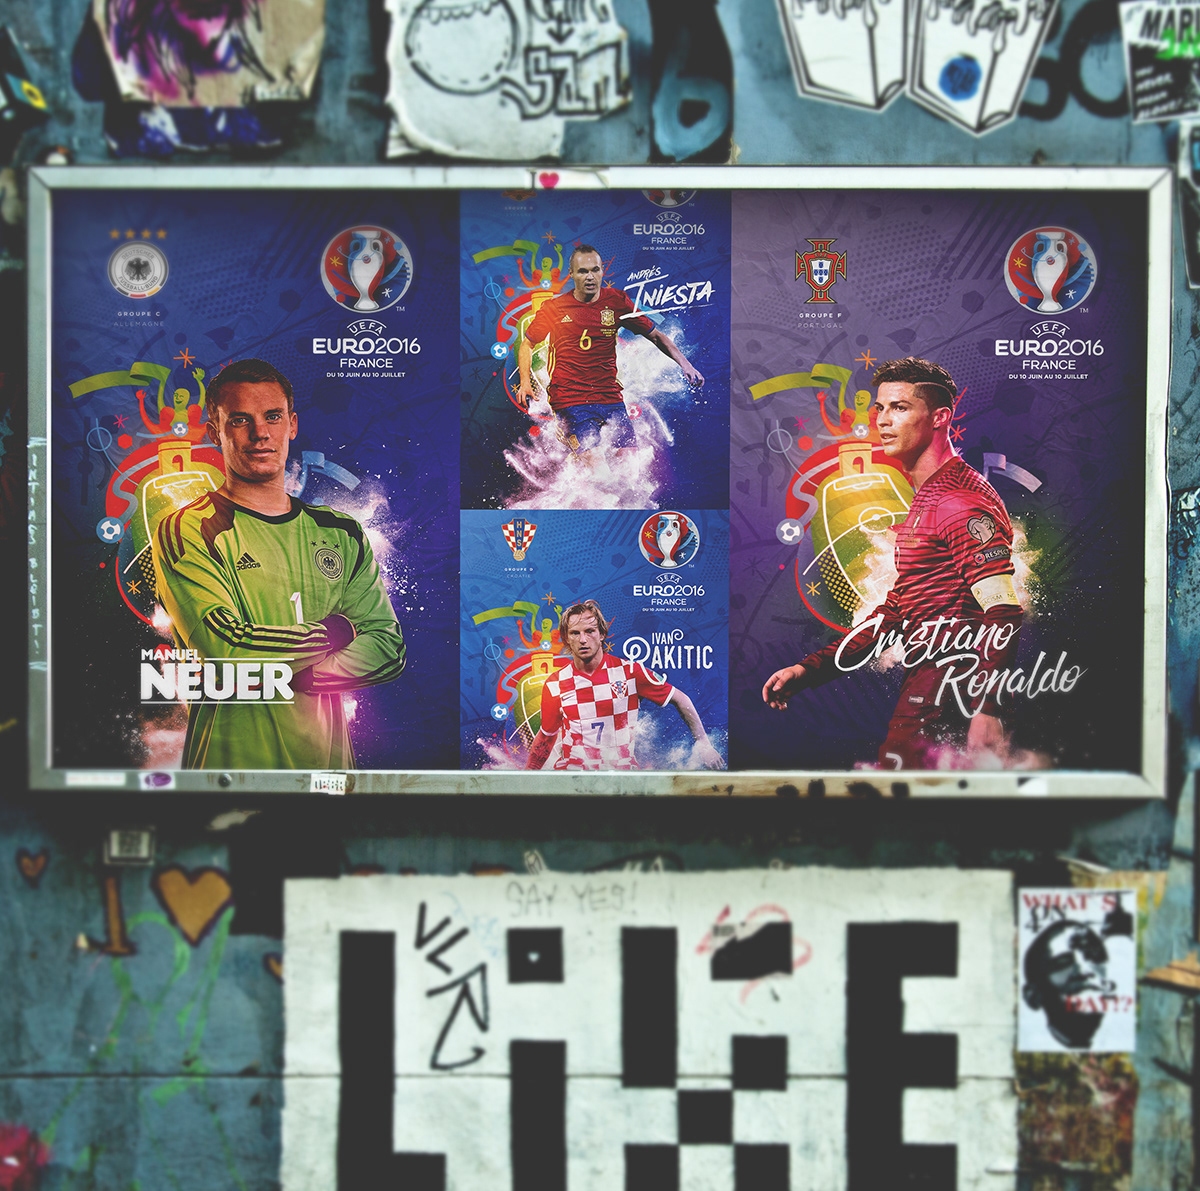 uefa euro soccer benzema rooney Neuer iniesta Vertonghen Ronaldo Outdoor media bus stop